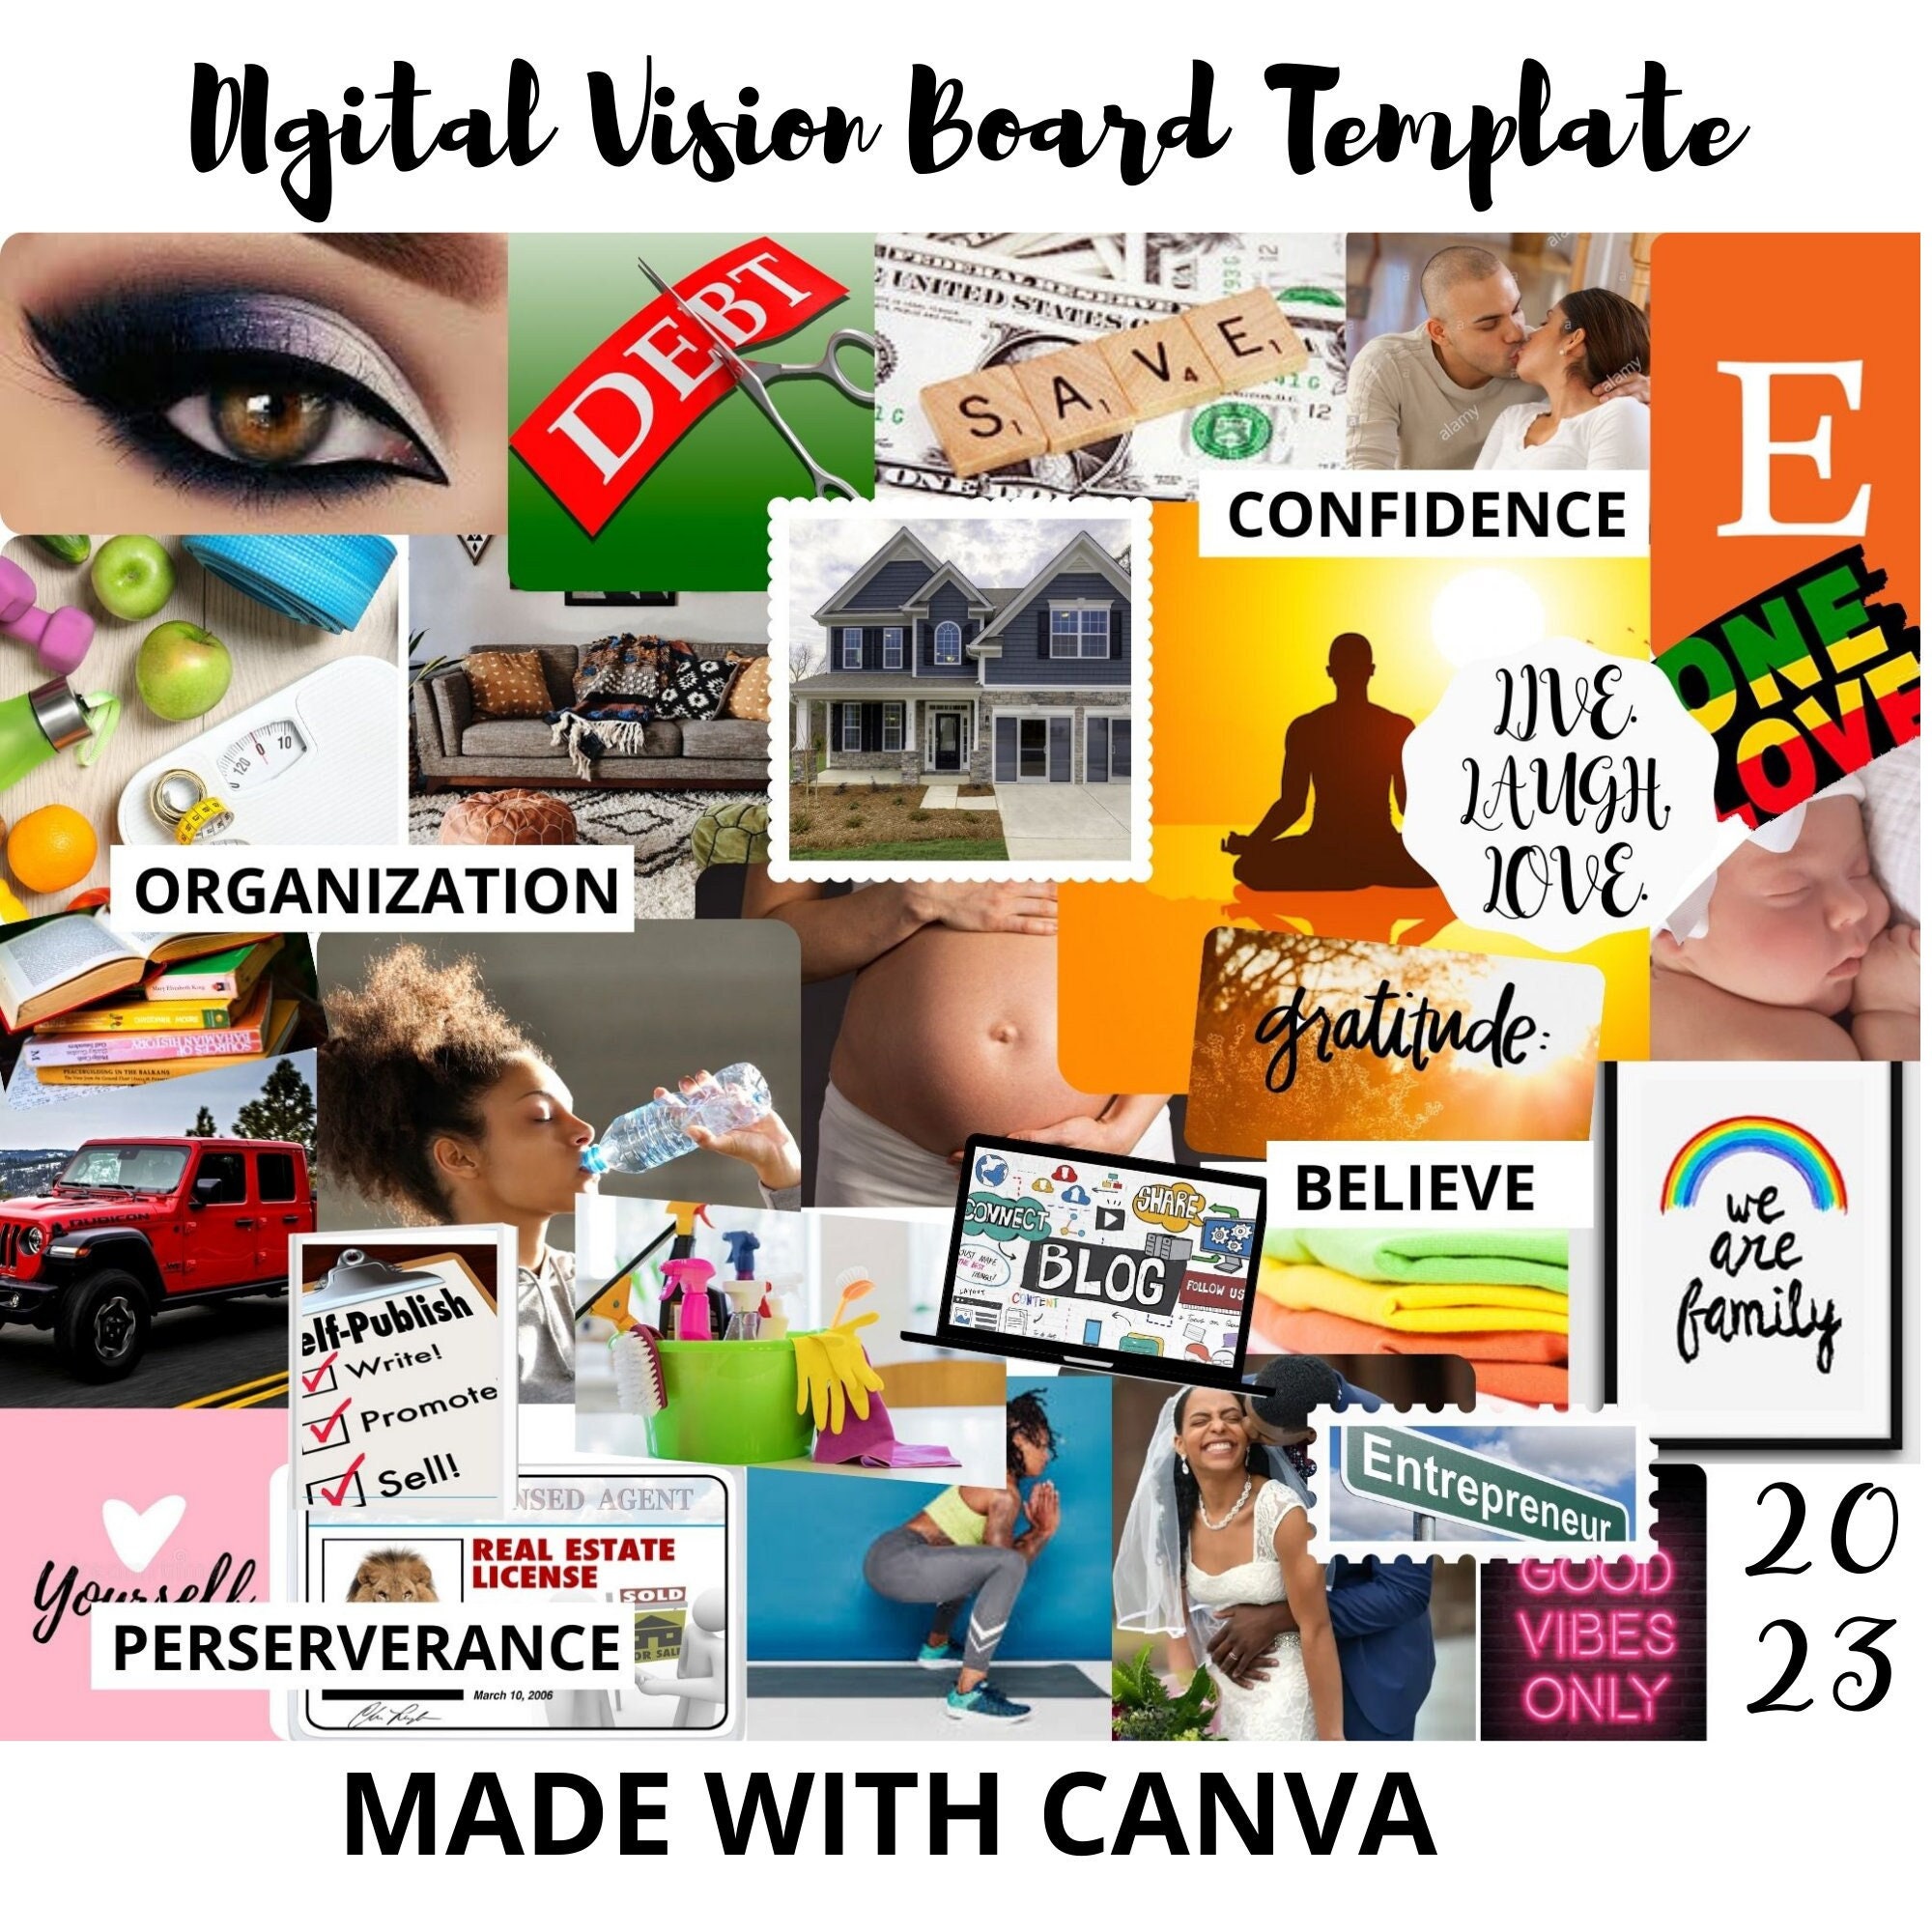 23 Digital Vision Board Template Printables Canva Online Etsy Uk